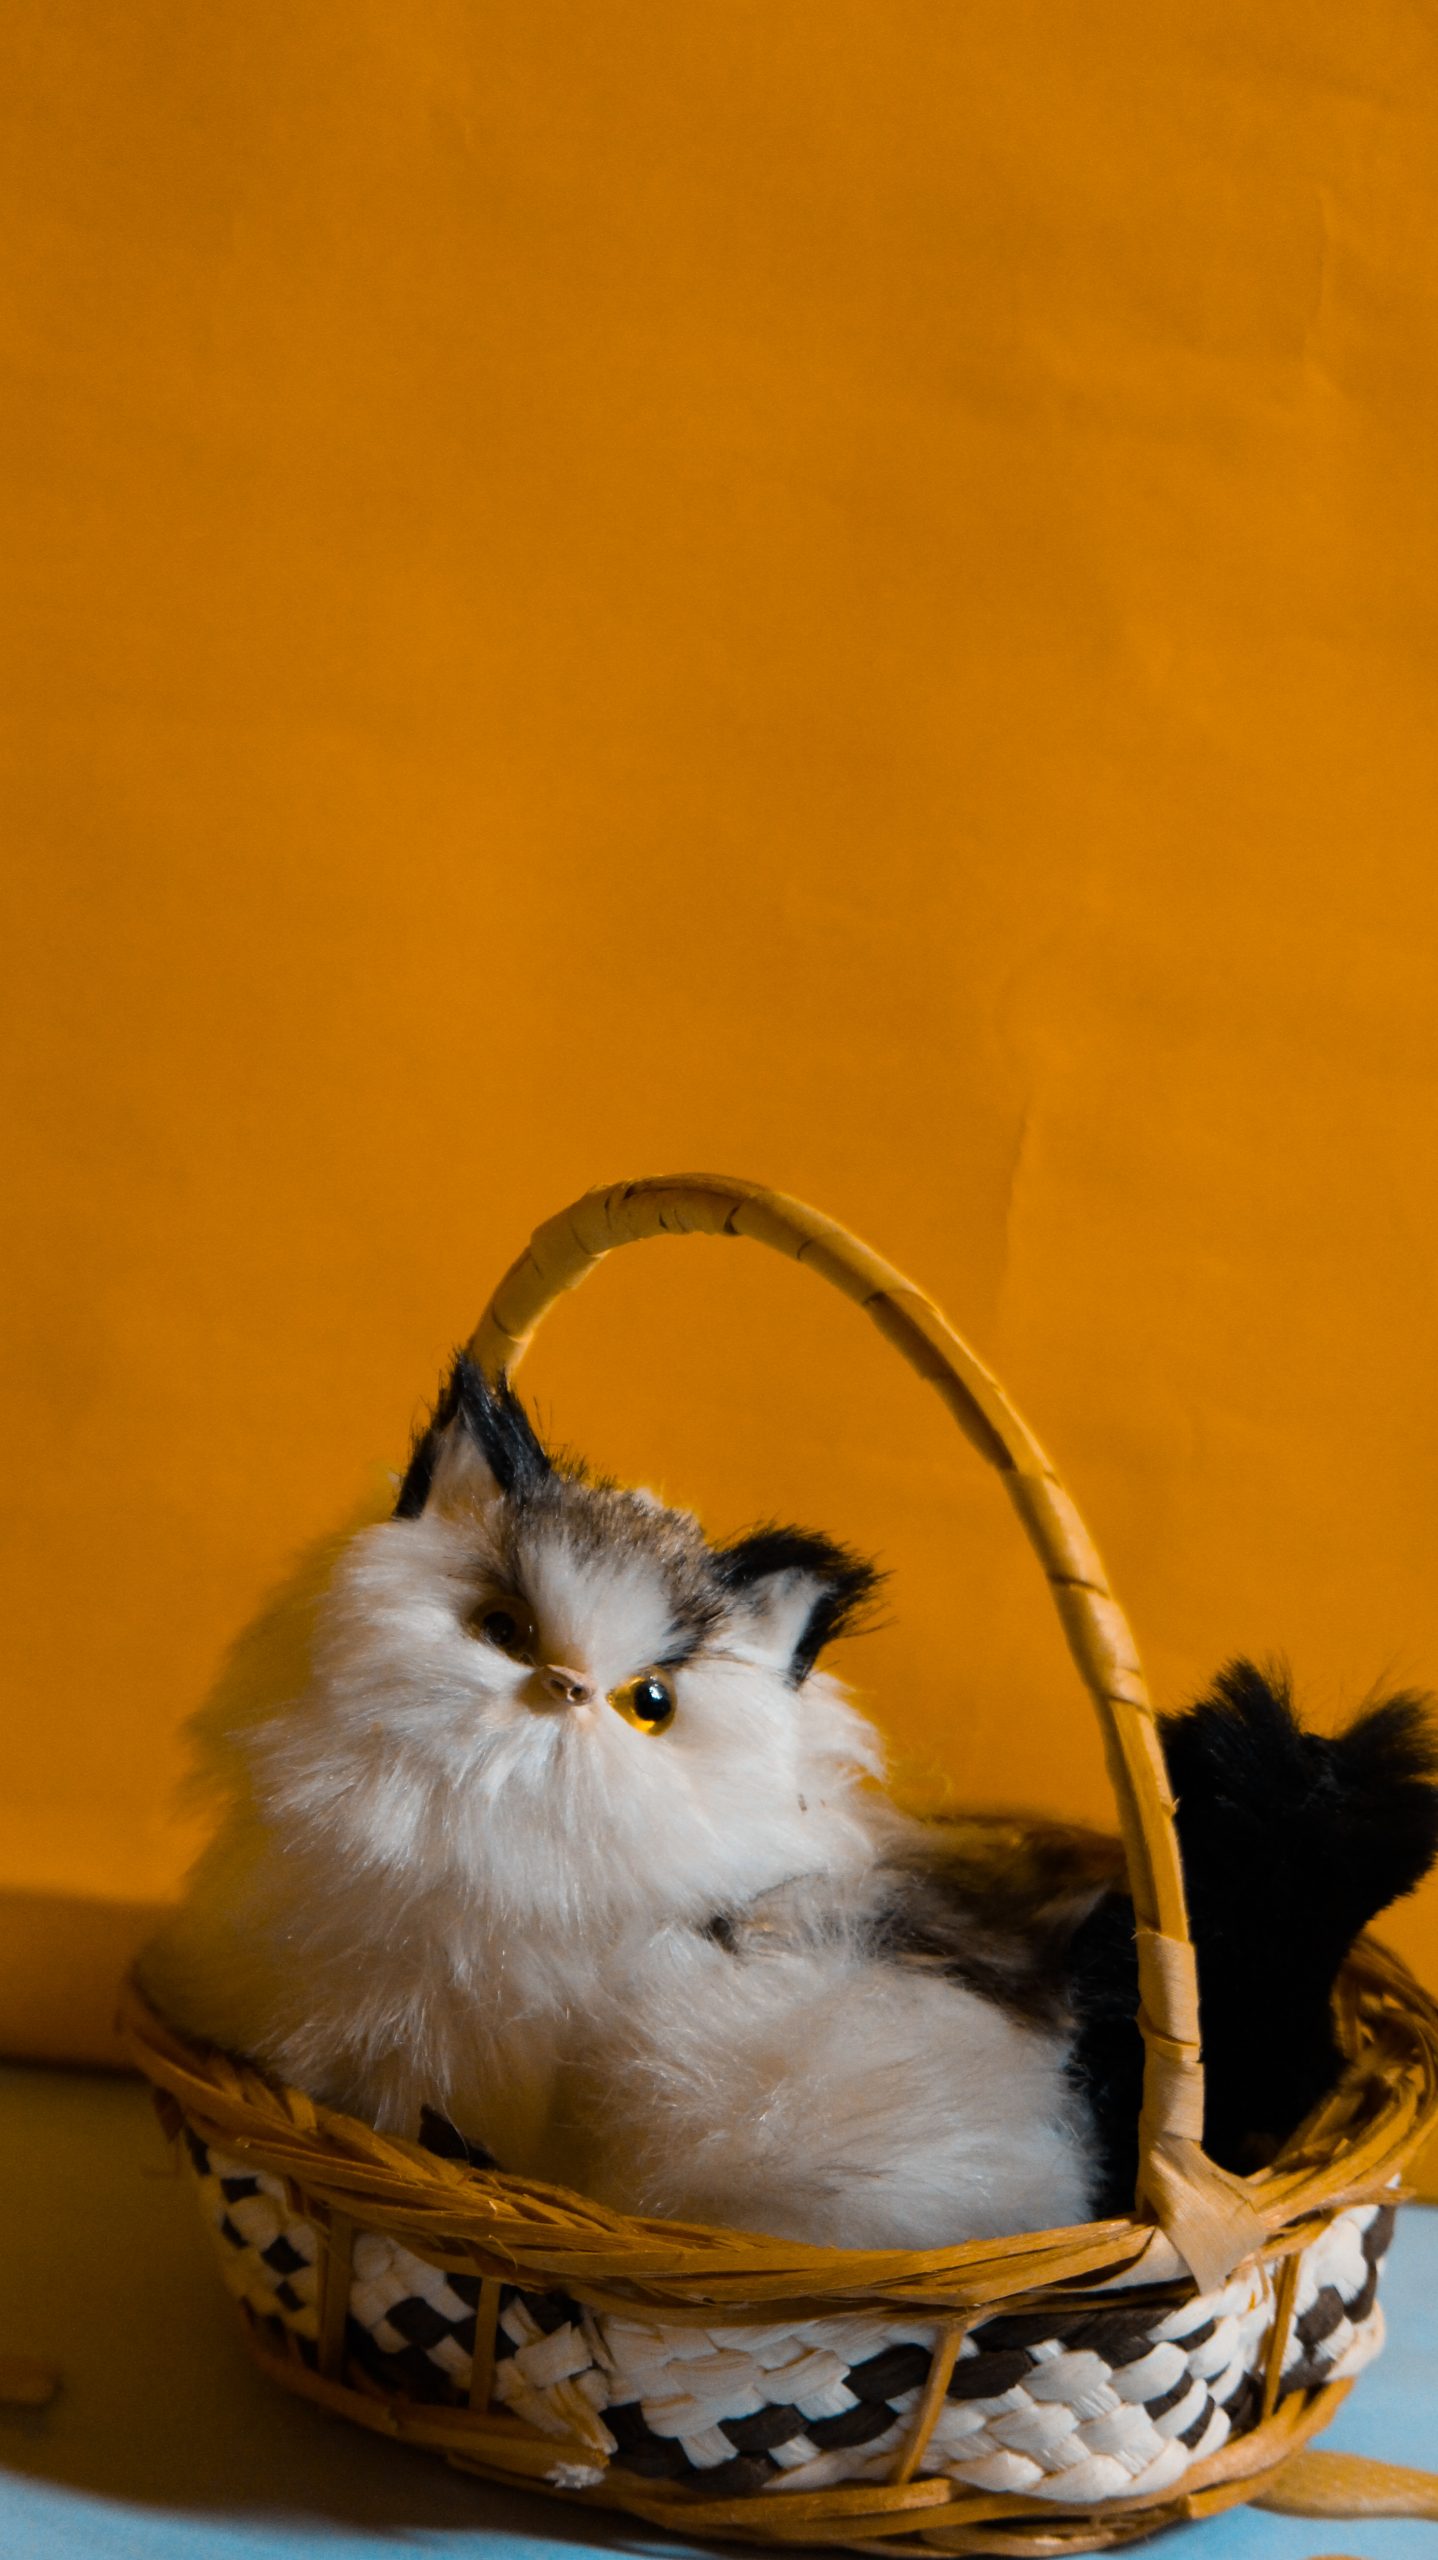 A cat in a basket